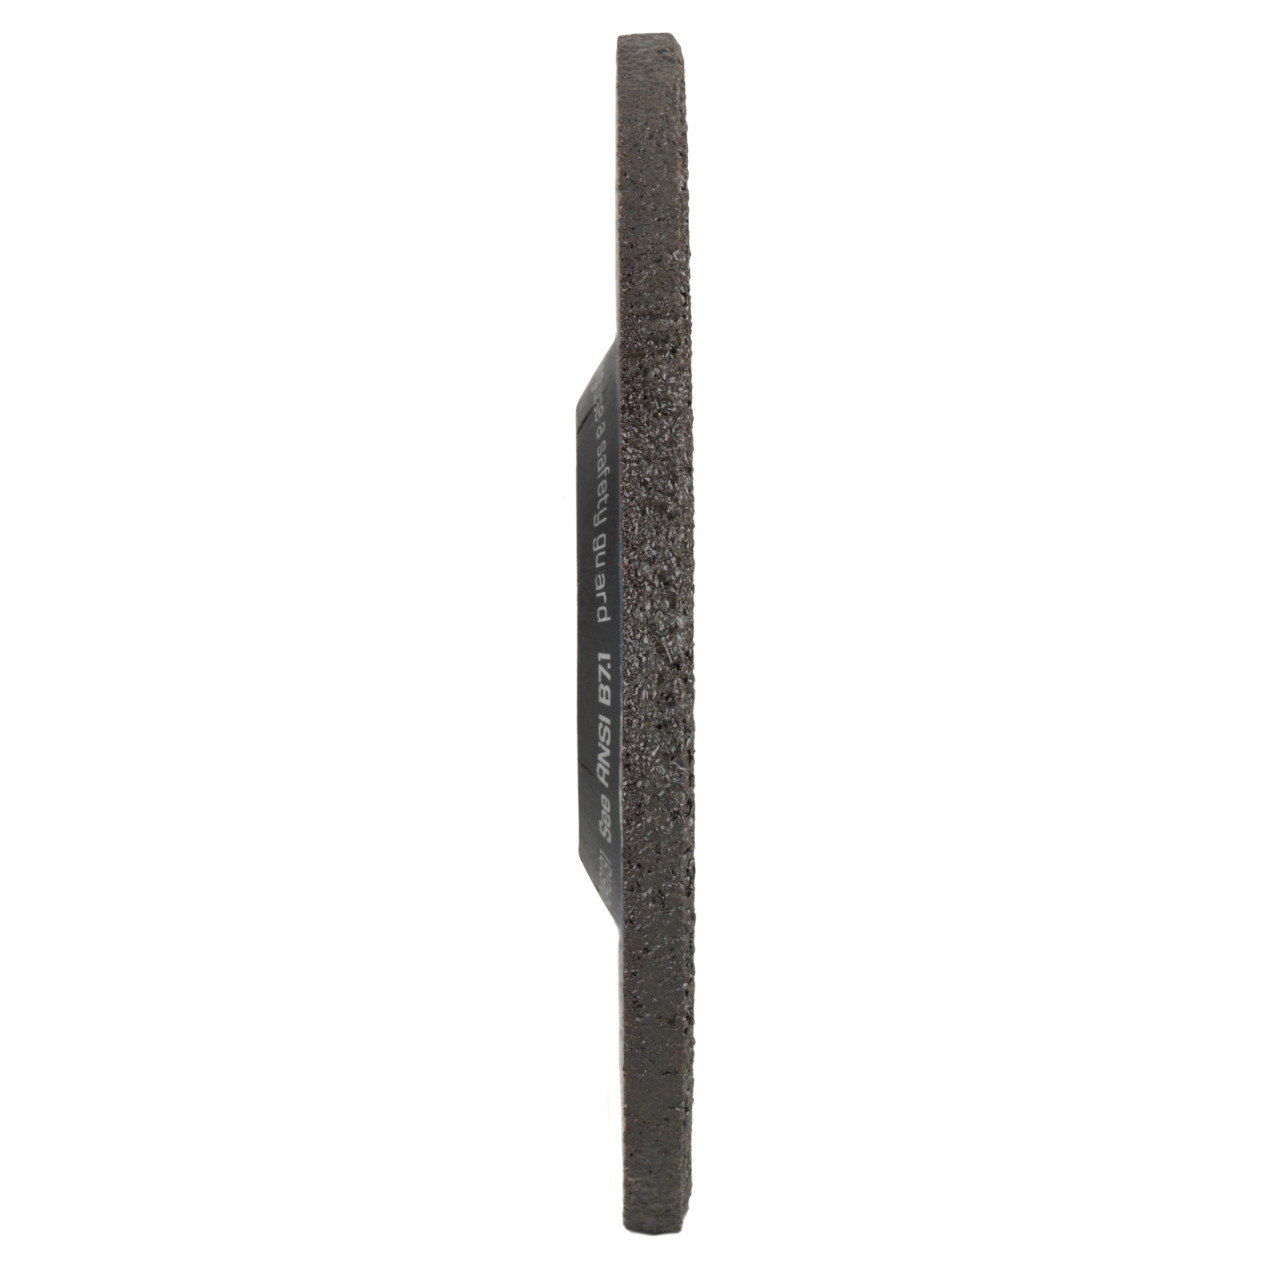 TYROLIT slijpschijf DxUxH 178x7x22,23 2in1 voor staal en roestvrij staal, vorm: 27 - offset-uitvoering, Art. 34046133